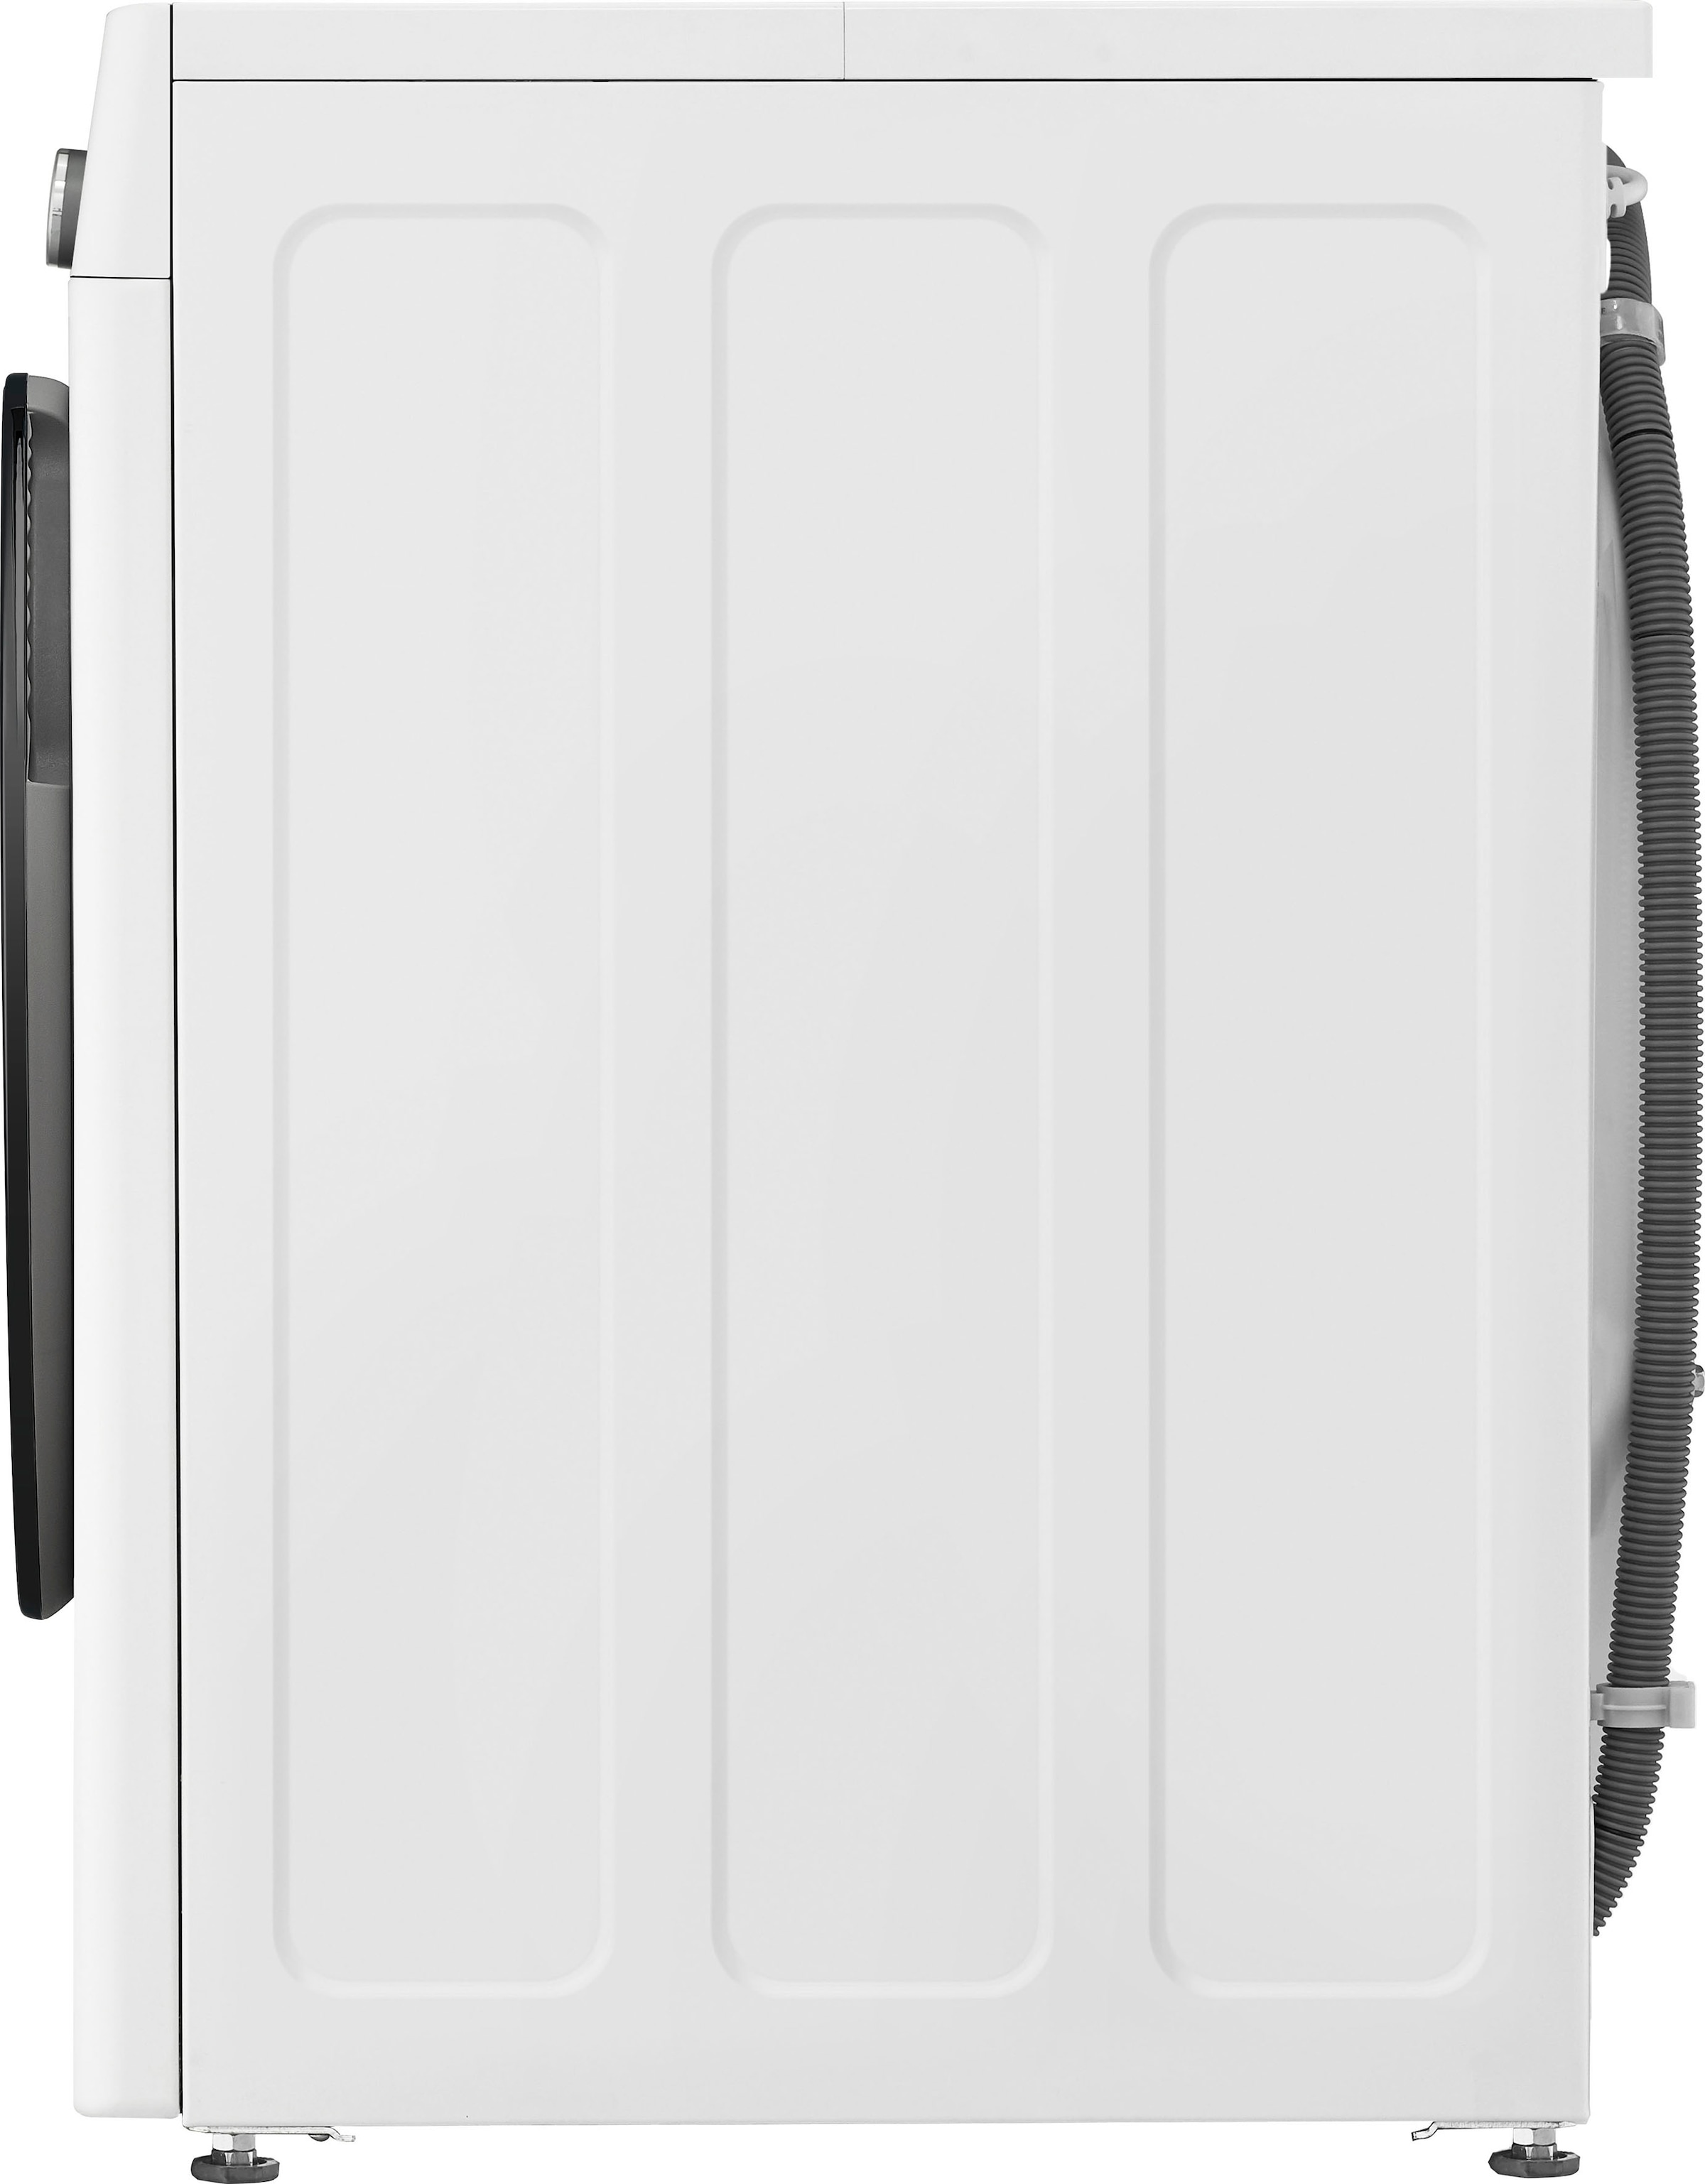 LG Waschmaschine »F4WR7031«, Serie 7, XXL 13 Garantie Jahren U/min F4WR7031, mit kg, 1400 3